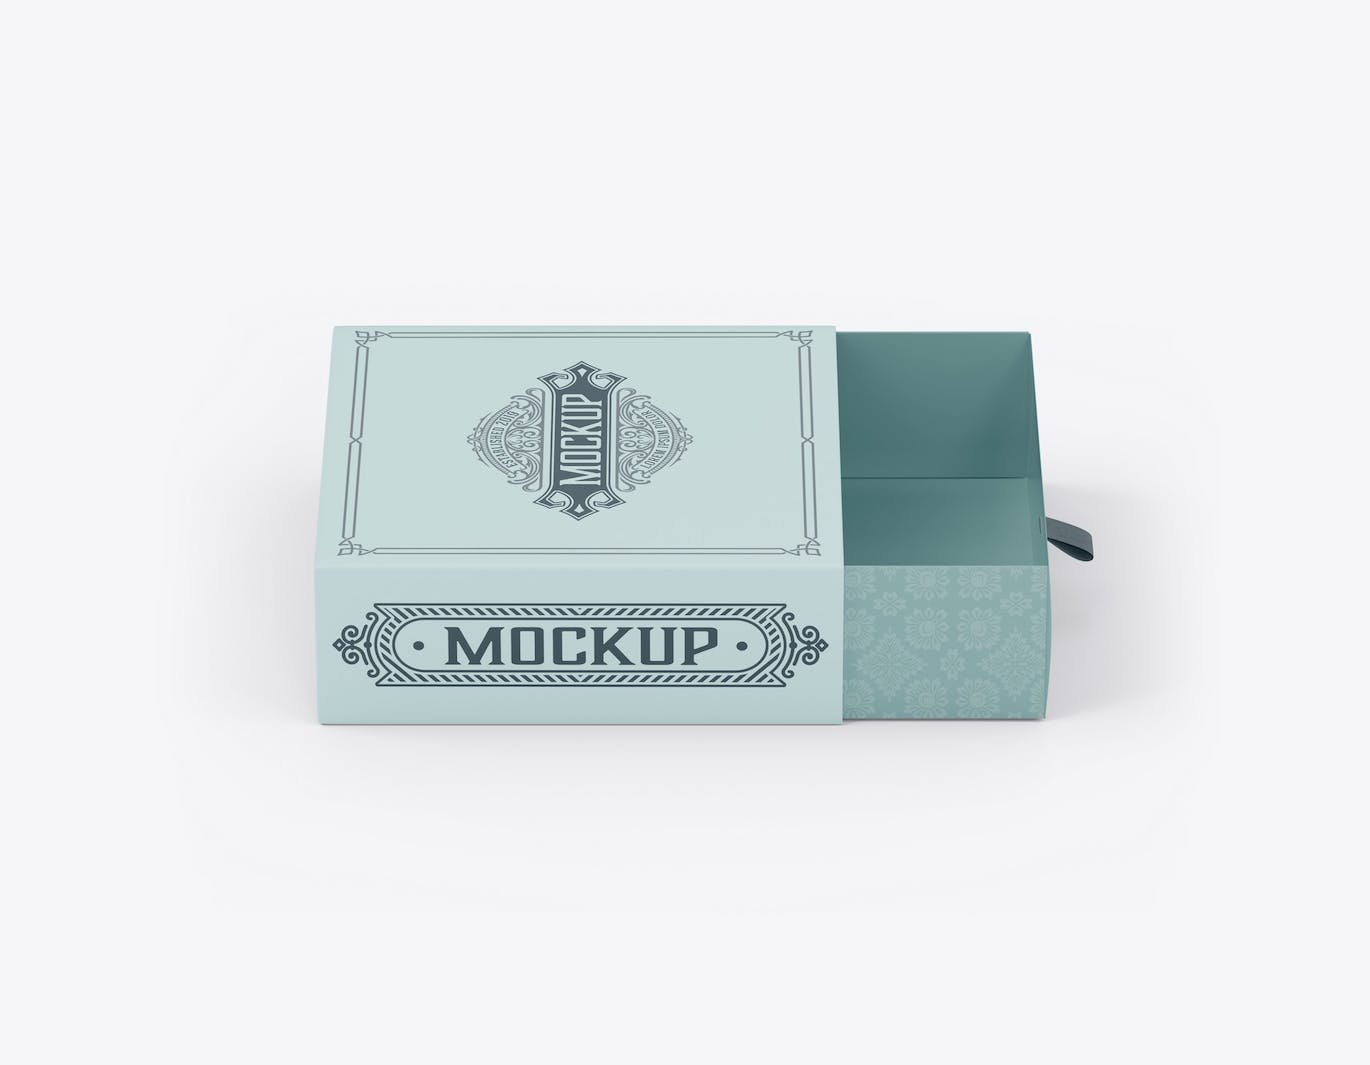 拖式纸盒包装设计样机 SlideBox Mockup 样机素材 第8张